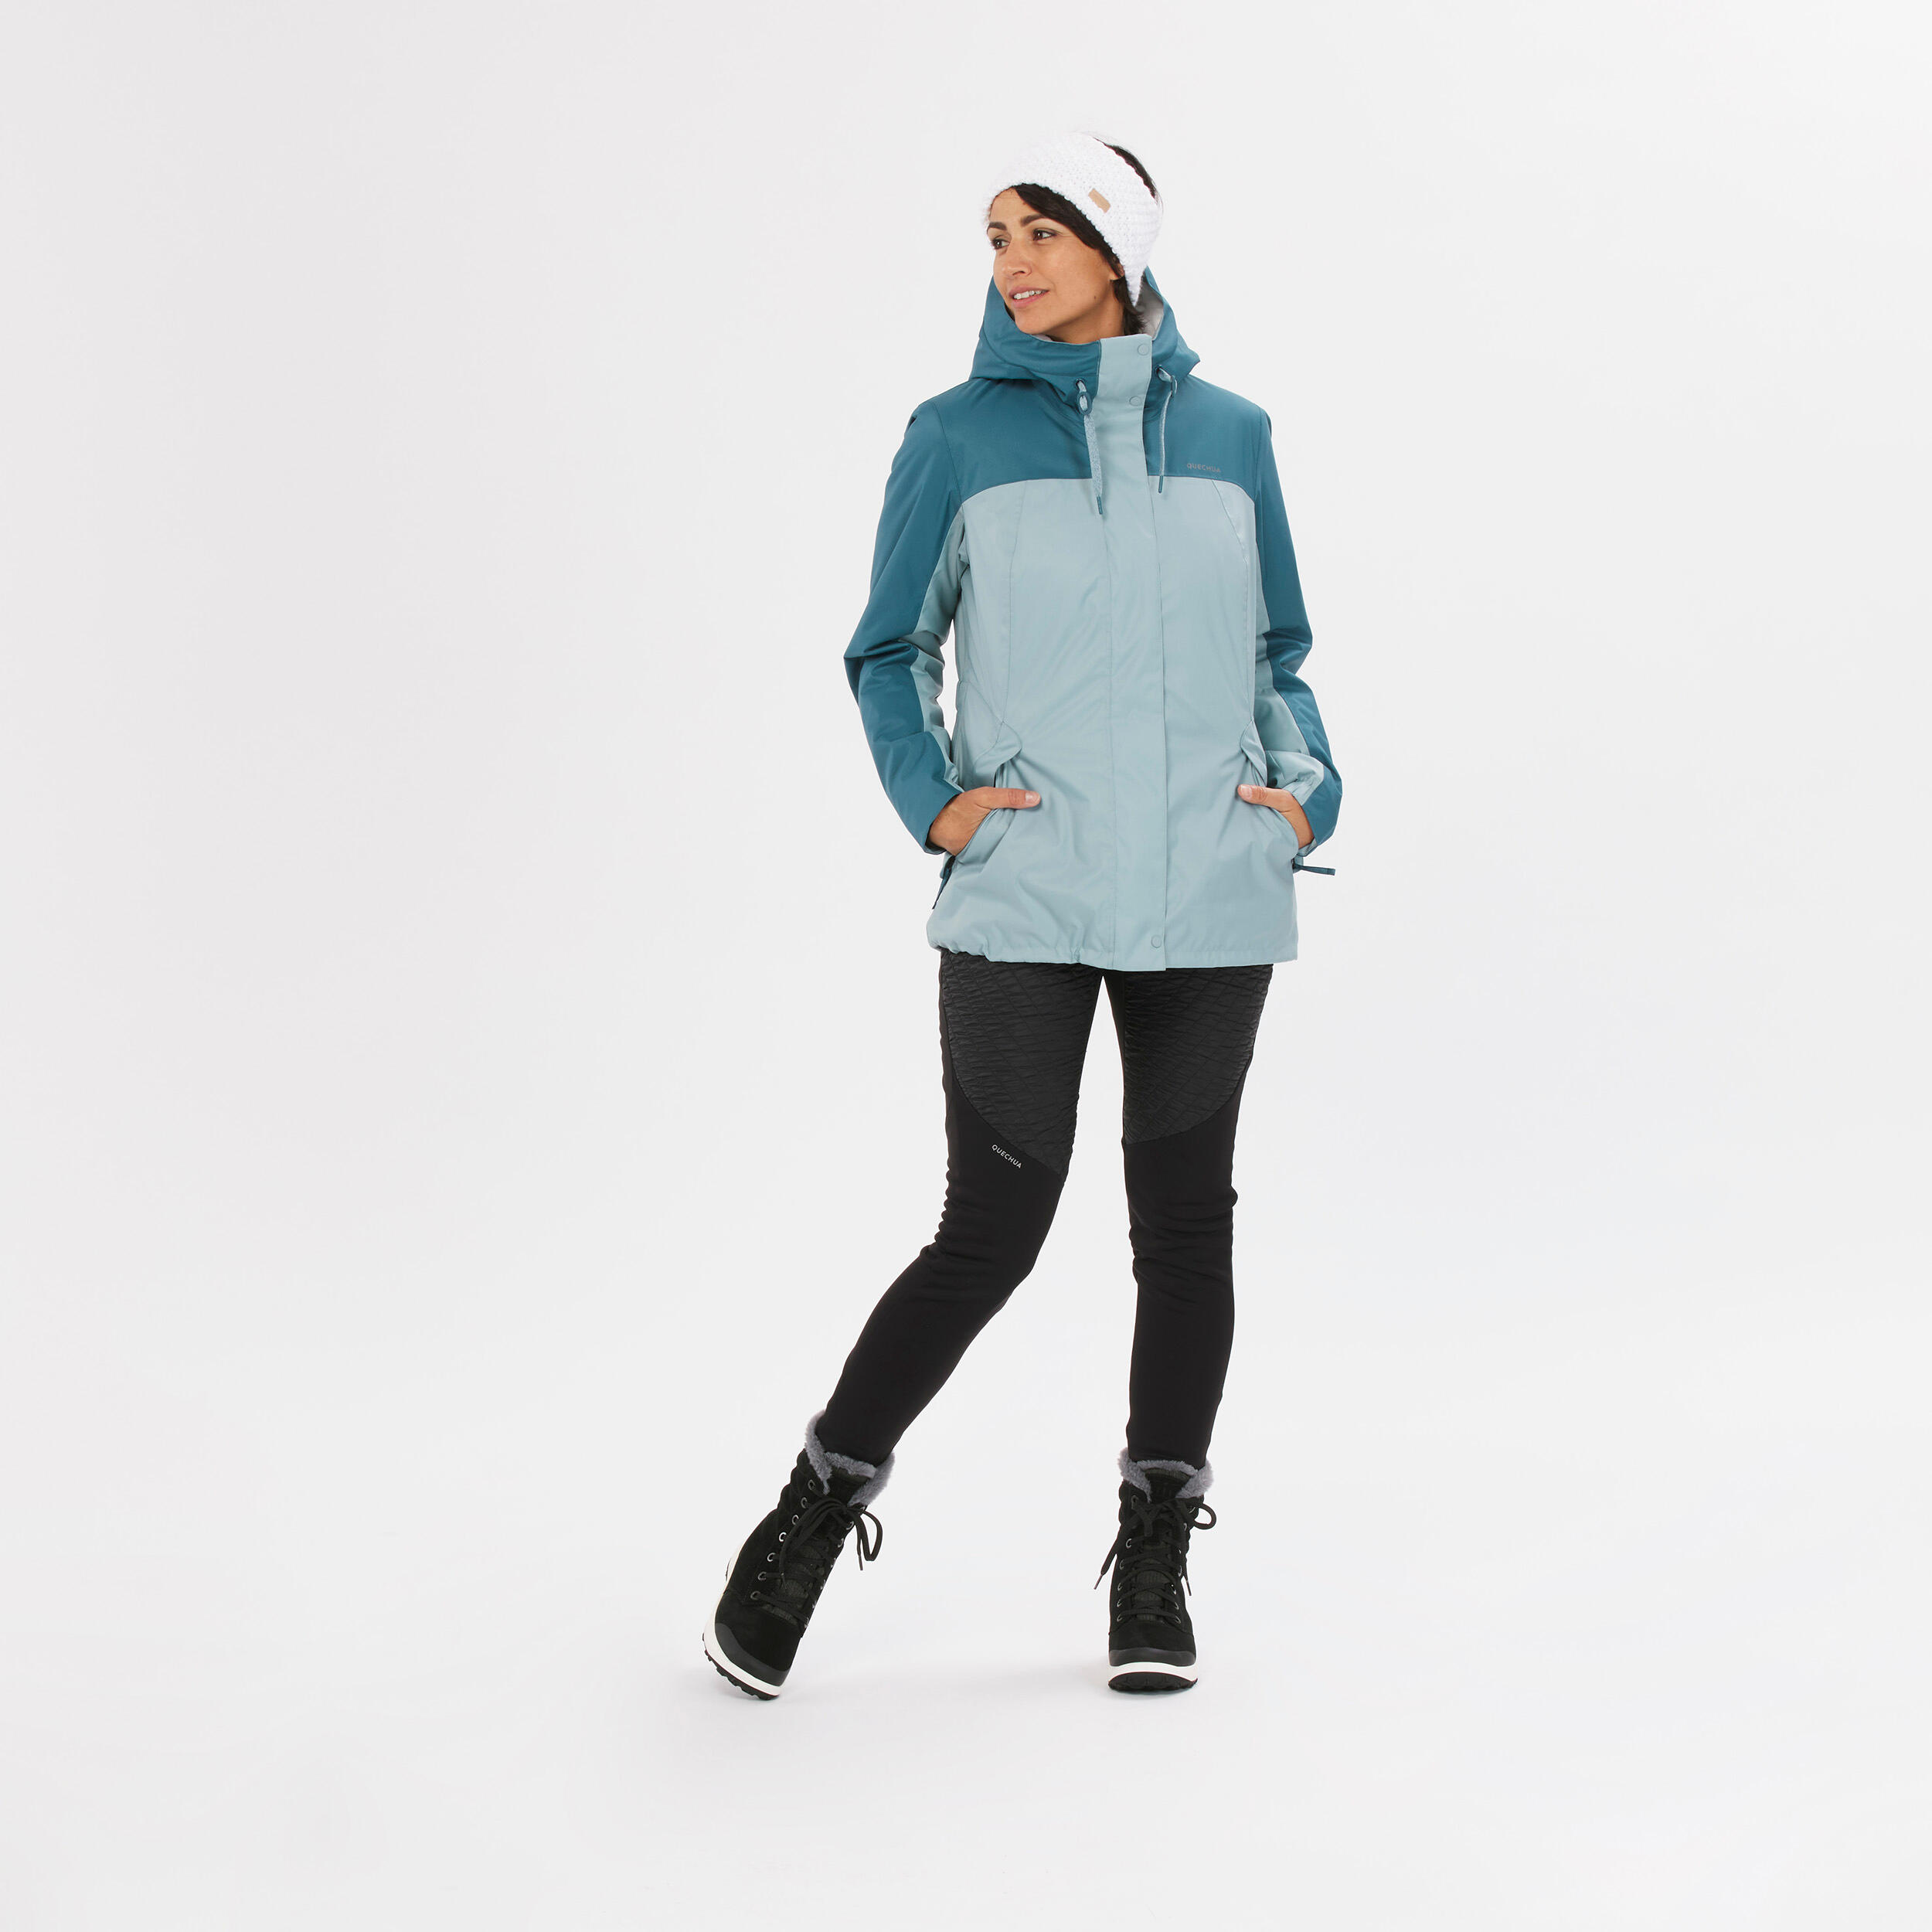 Women’s hiking waterproof winter jacket - SH500 -10°C 9/15